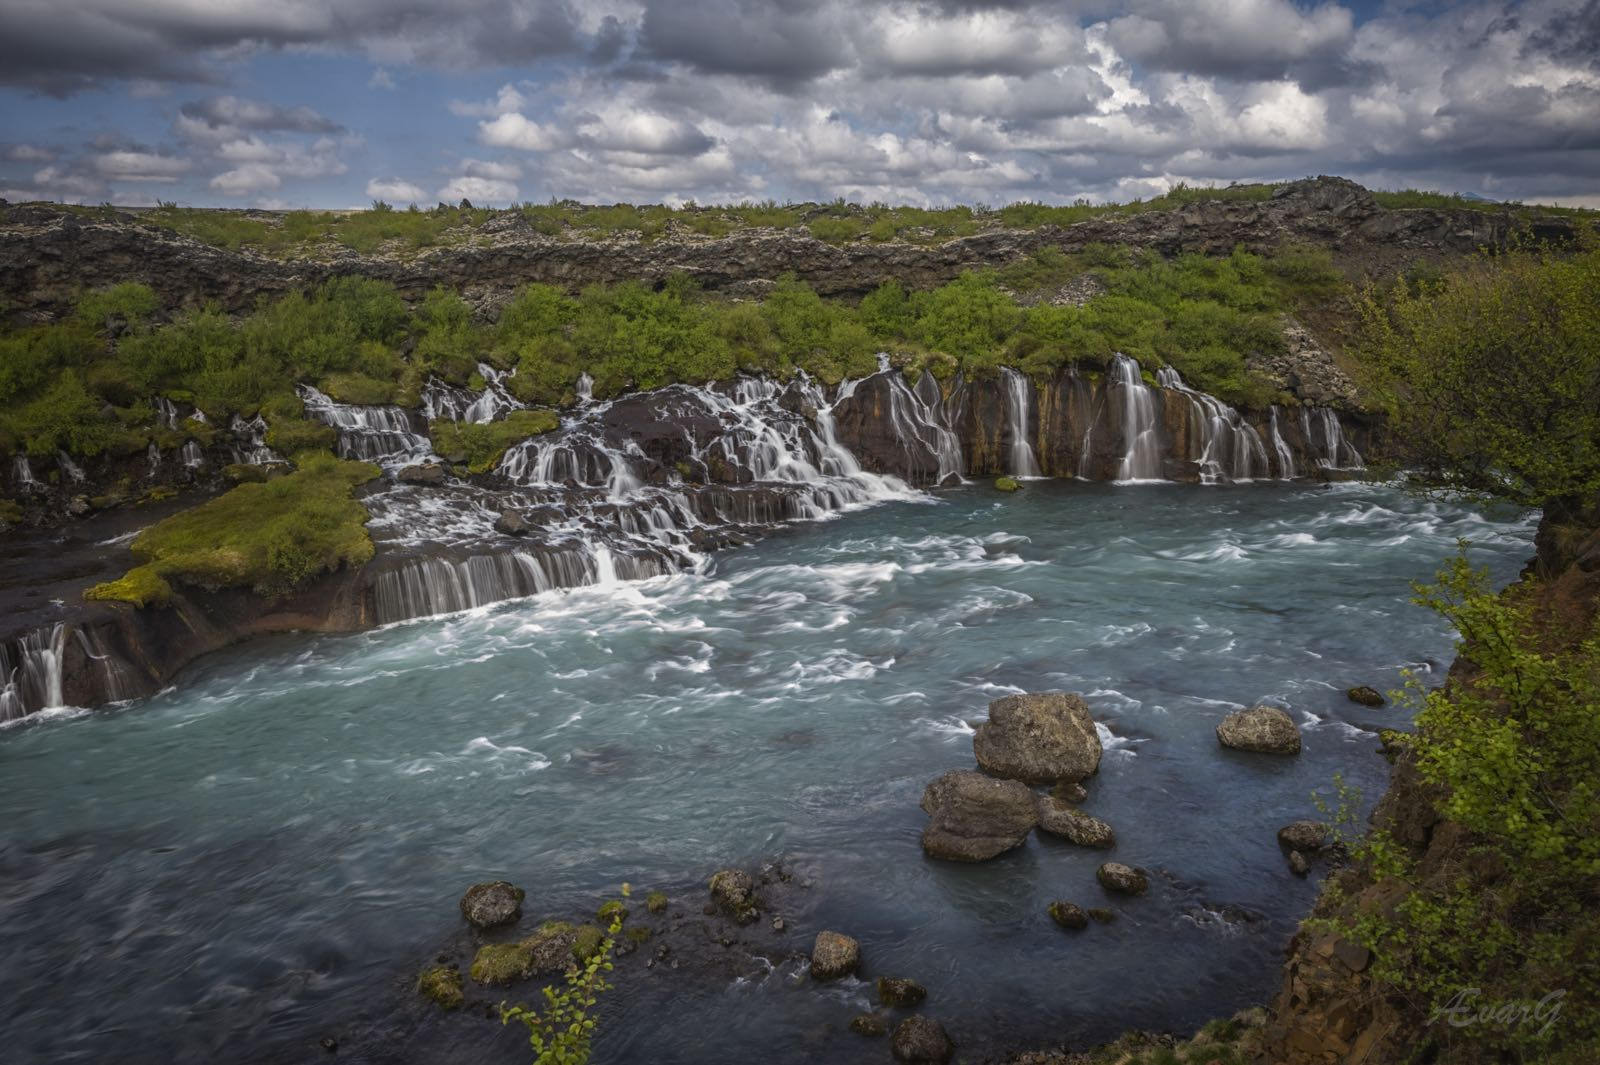 น้ำตกเฮินฟอซซาร์ มีสายน้ำไหลออกมาจากทุ่งลาวาผืนกว้างในทางตะวันออกของไอซ์แลนด์ดูเหมือนเป็นลำธารเล็กๆ มากมาย